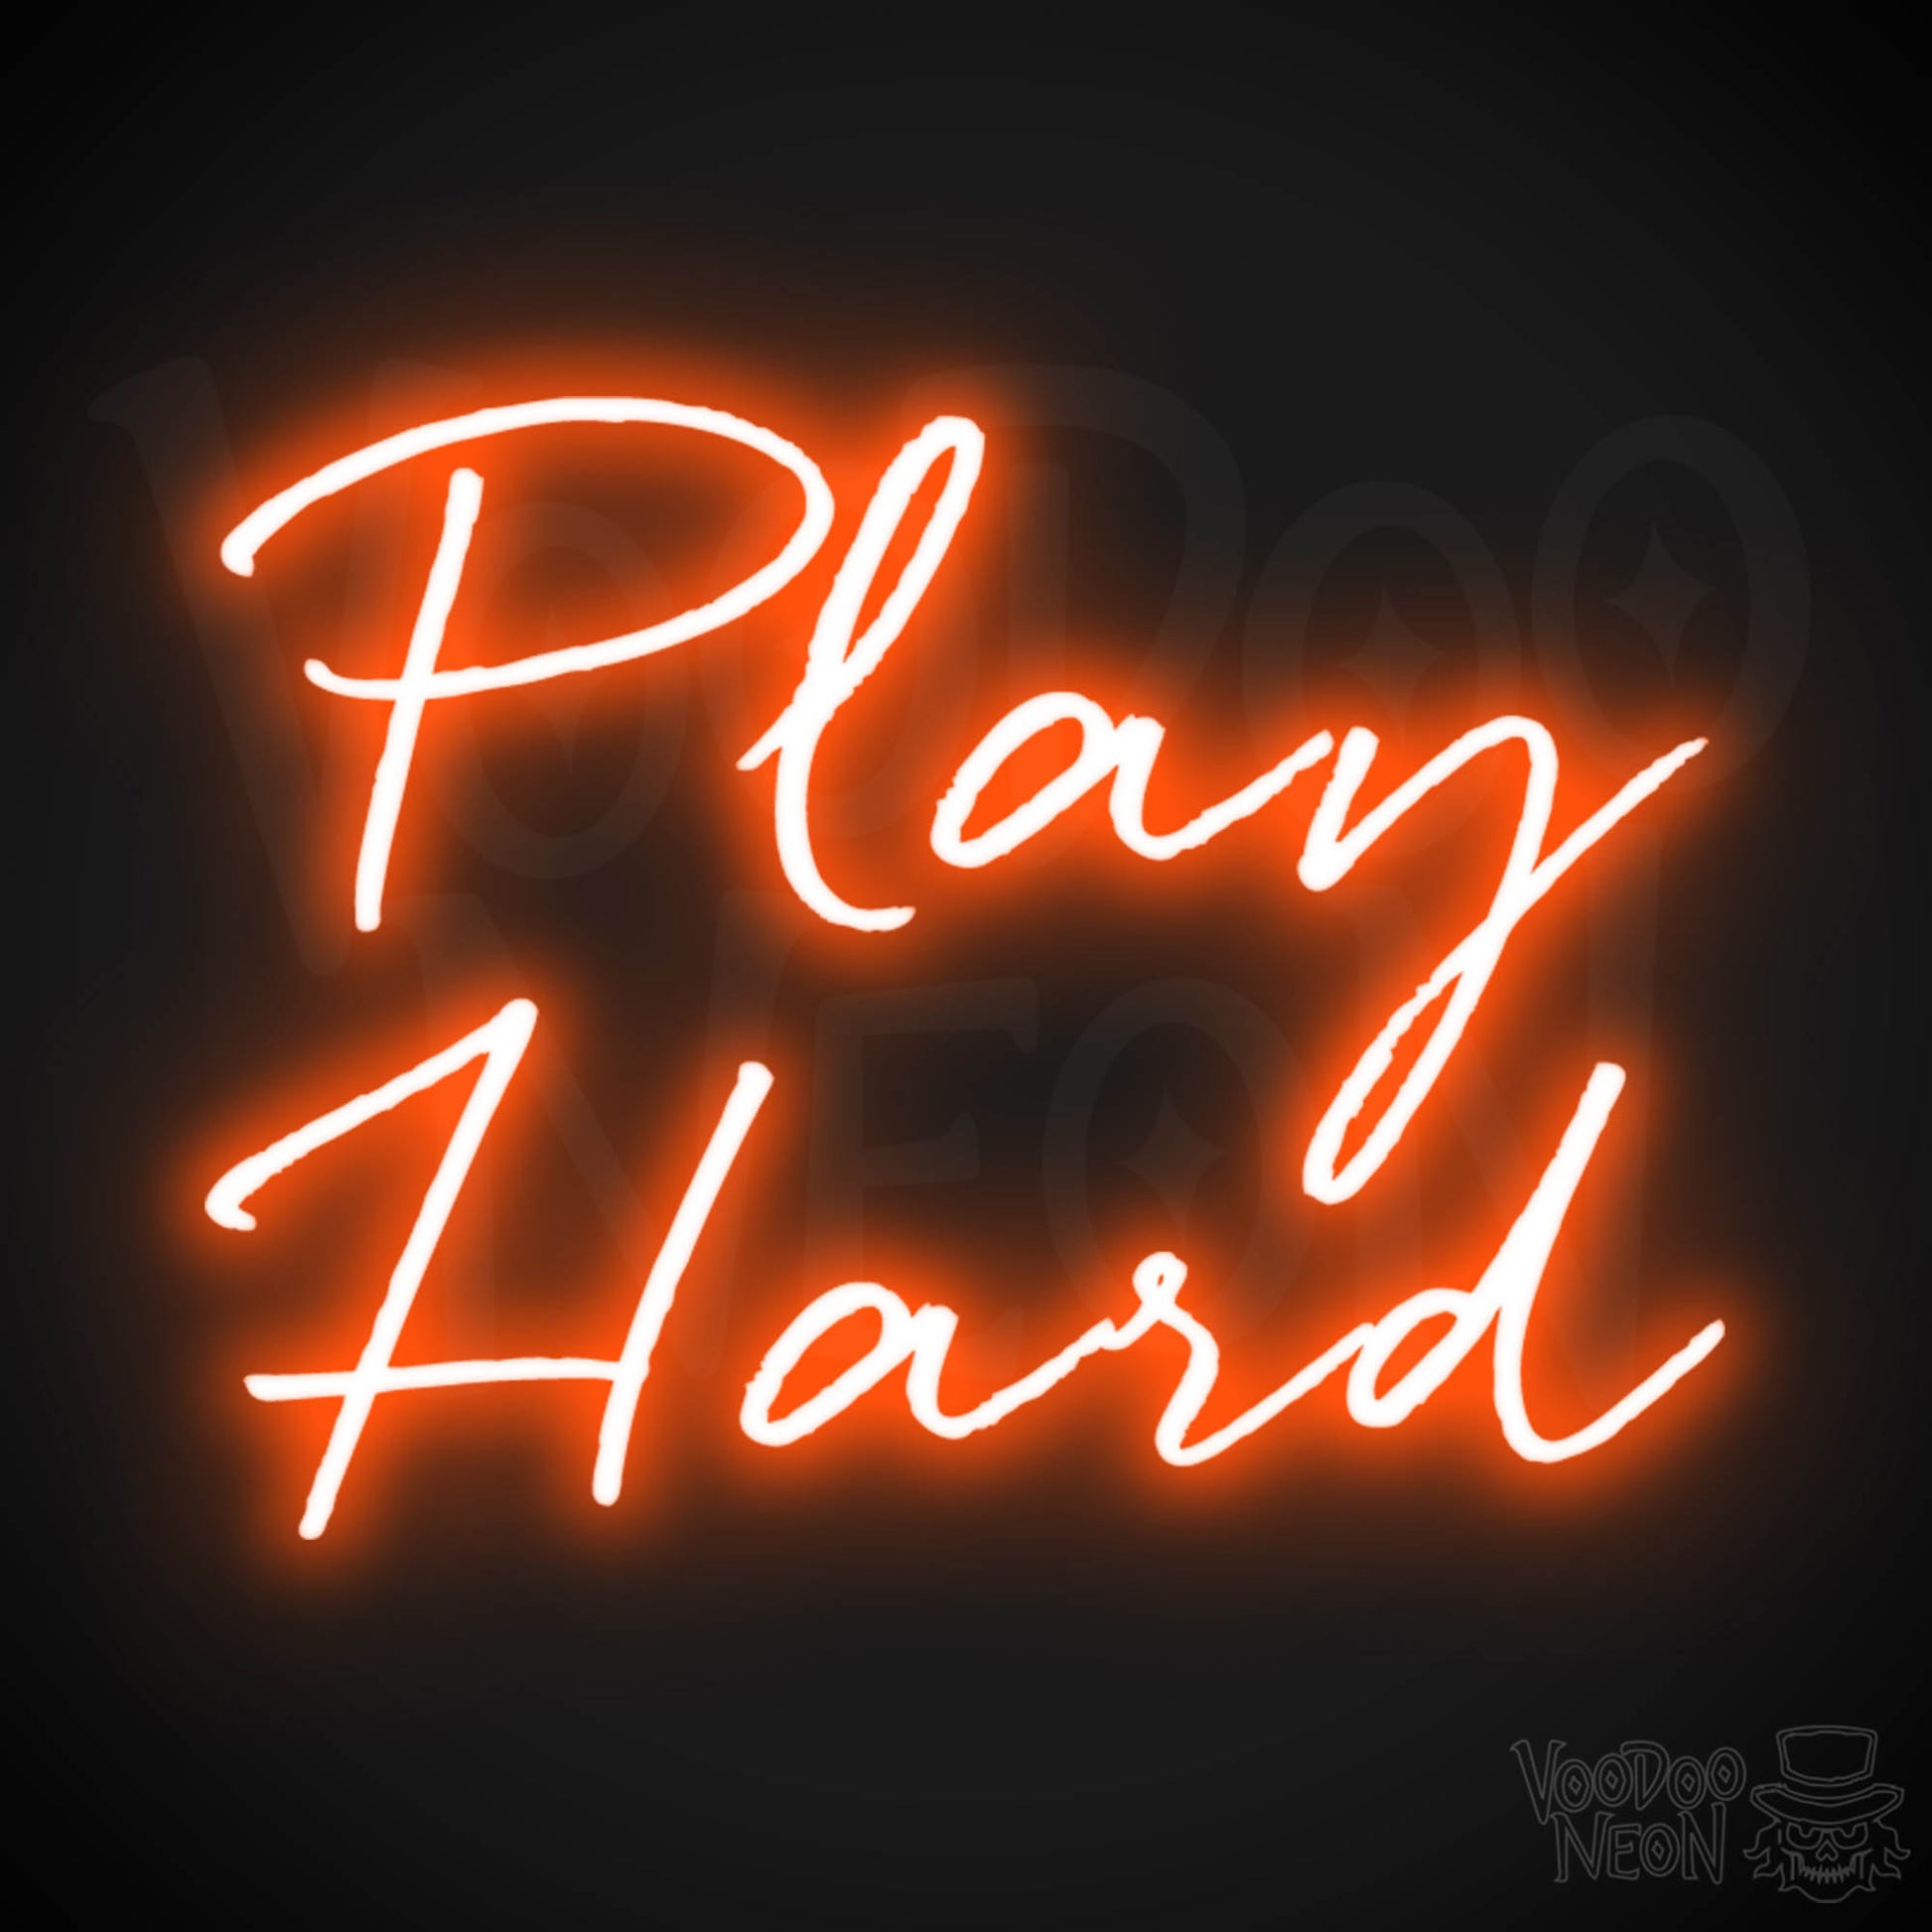 Play Hard Neon Sign - Neon Play Hard Sign - Play Hard LED Sign - Color Orange